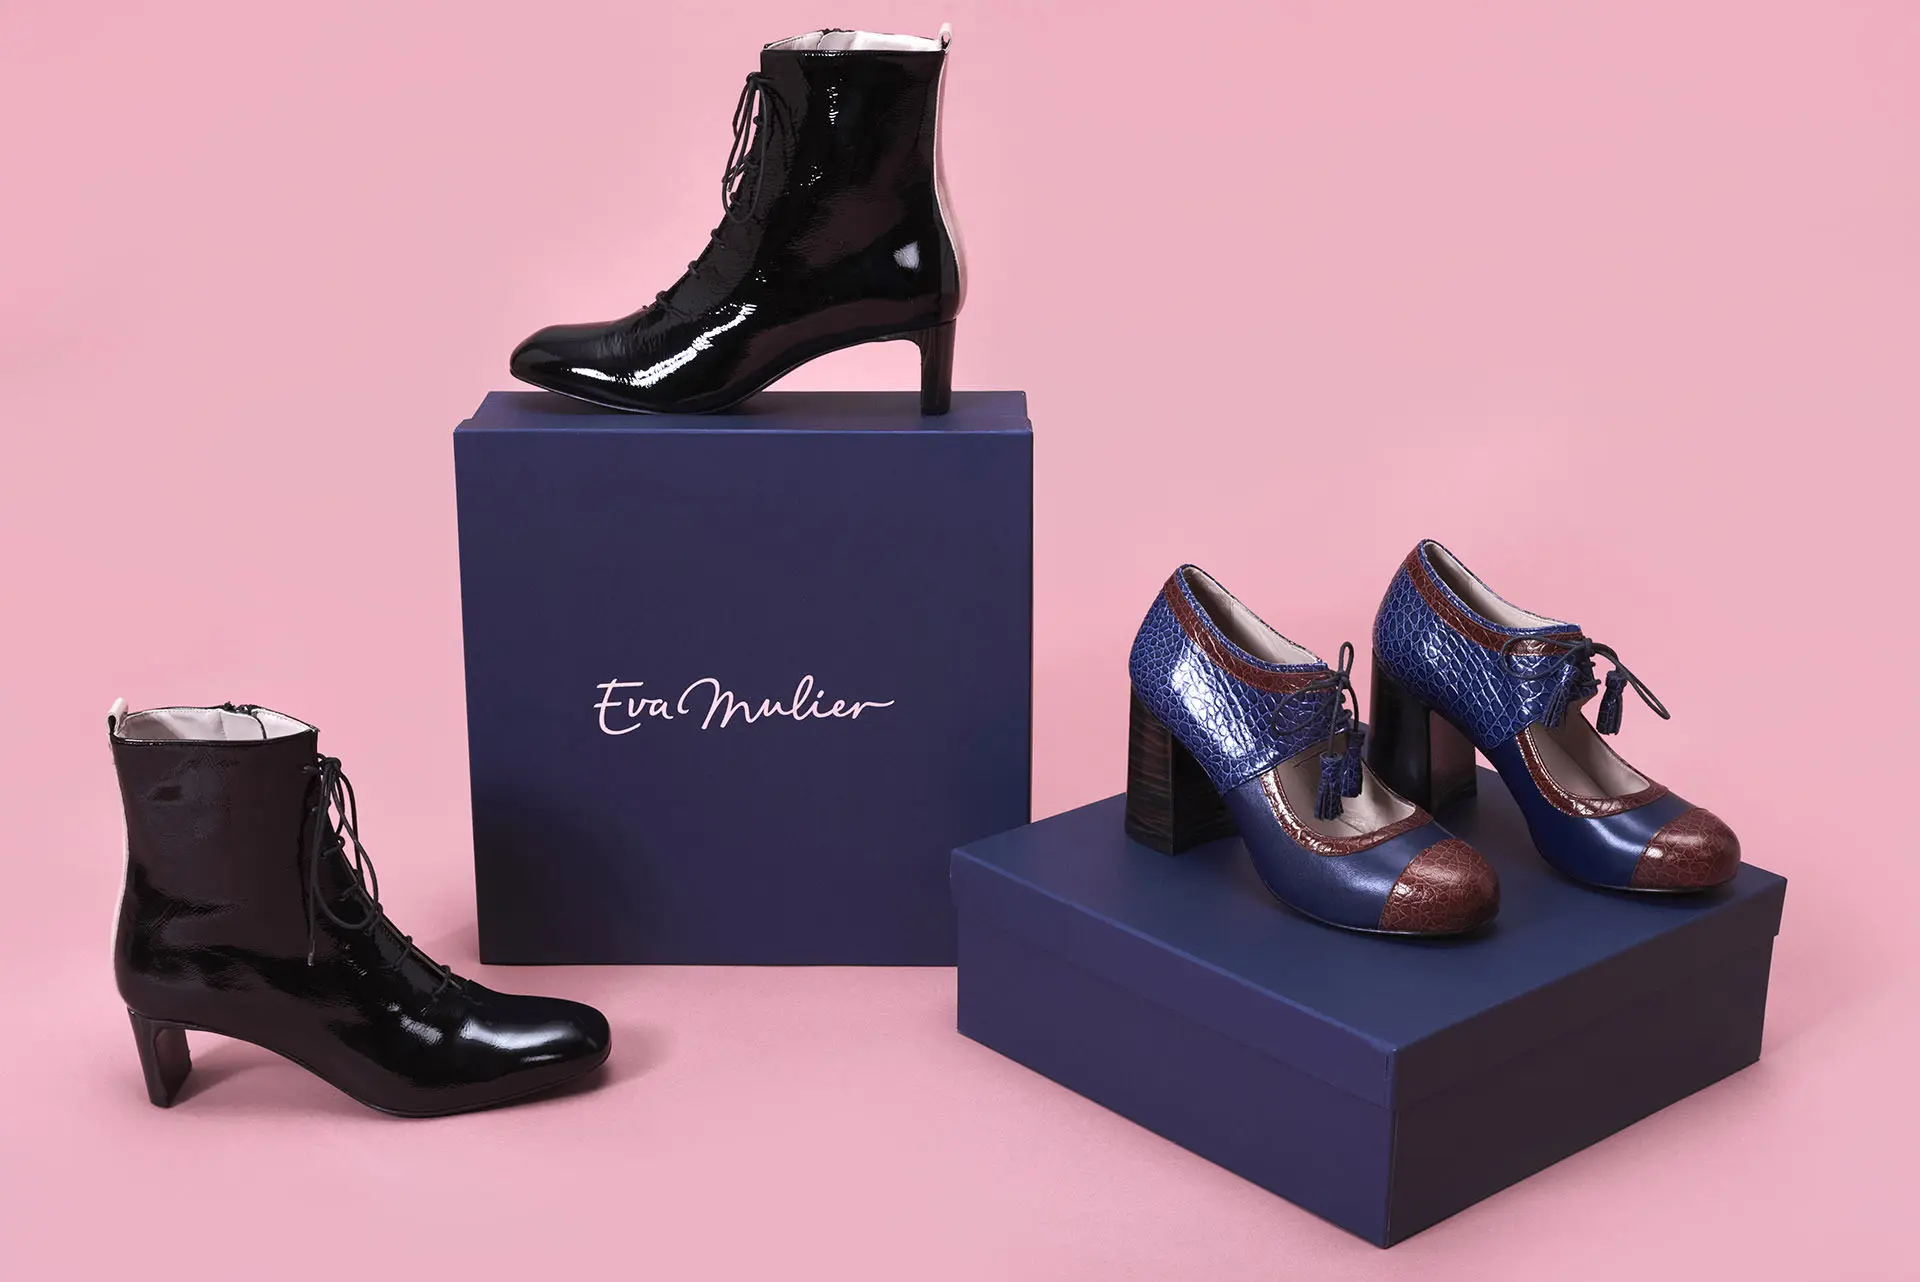 imagen de diferentes cajas de zapatos con la marca estampada y zapatos de Eva Mulier